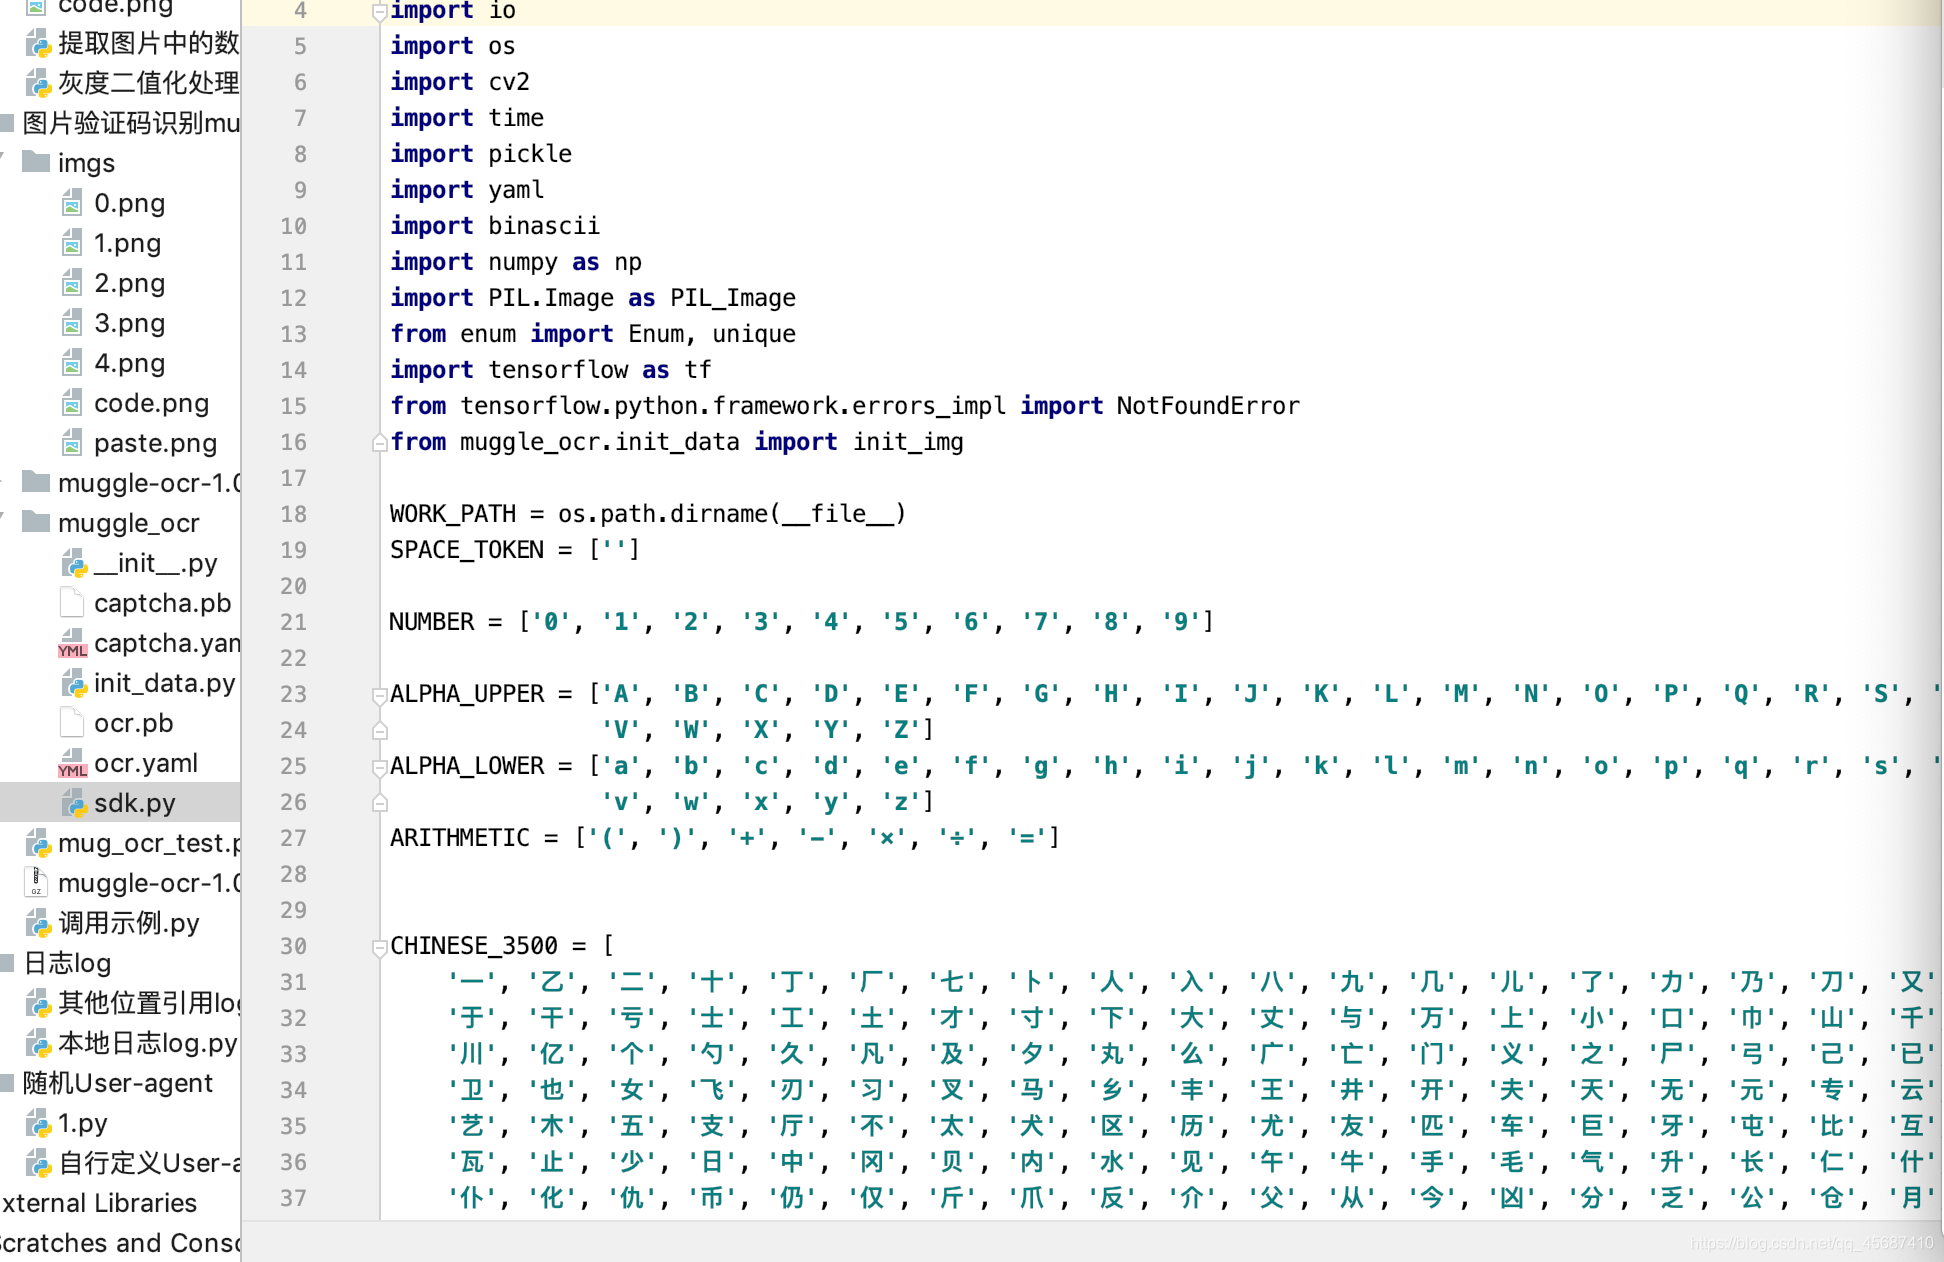 python图片验证码识别-基于机器学习的muggle_ocr图片验证码识别_muggle_ocr 训练验证码-CSDN博客